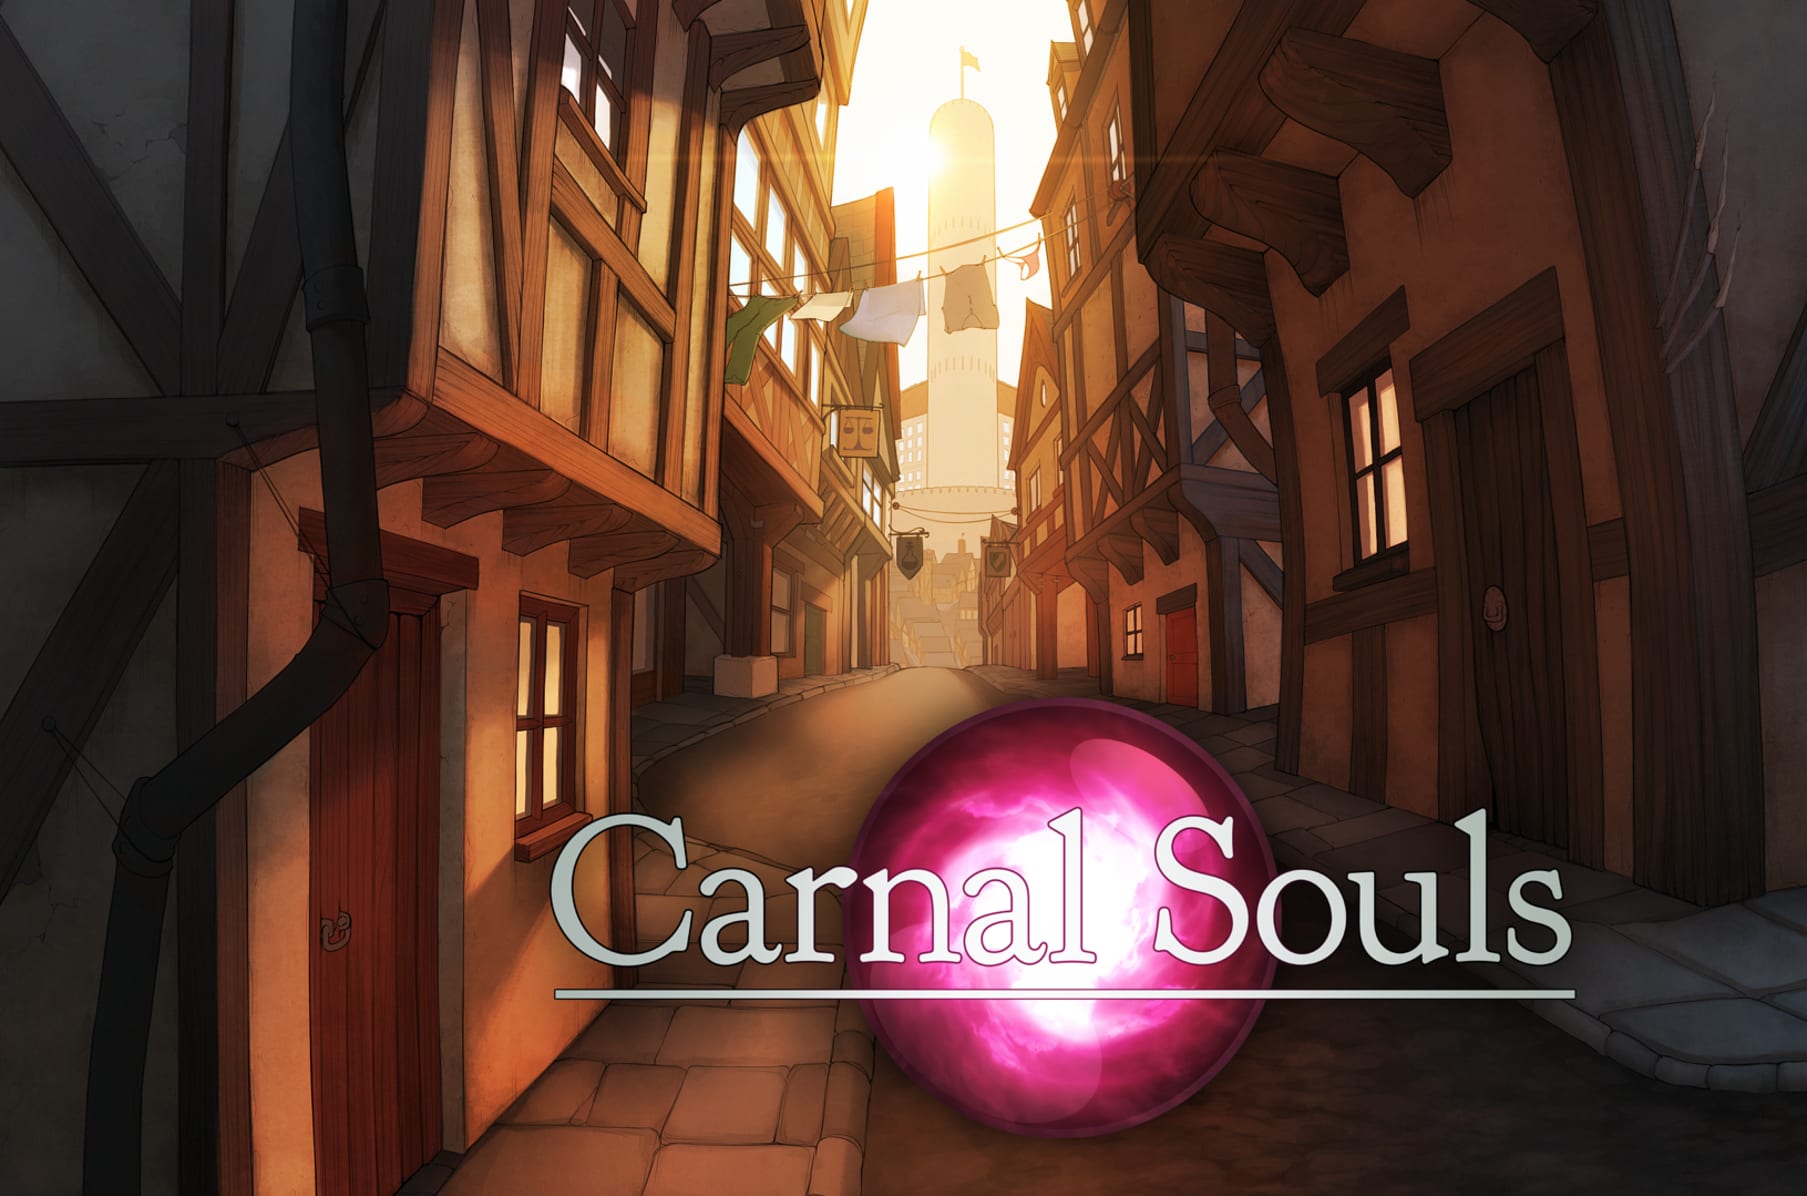 1807px x 1196px - Carnal Souls | Indiegogo